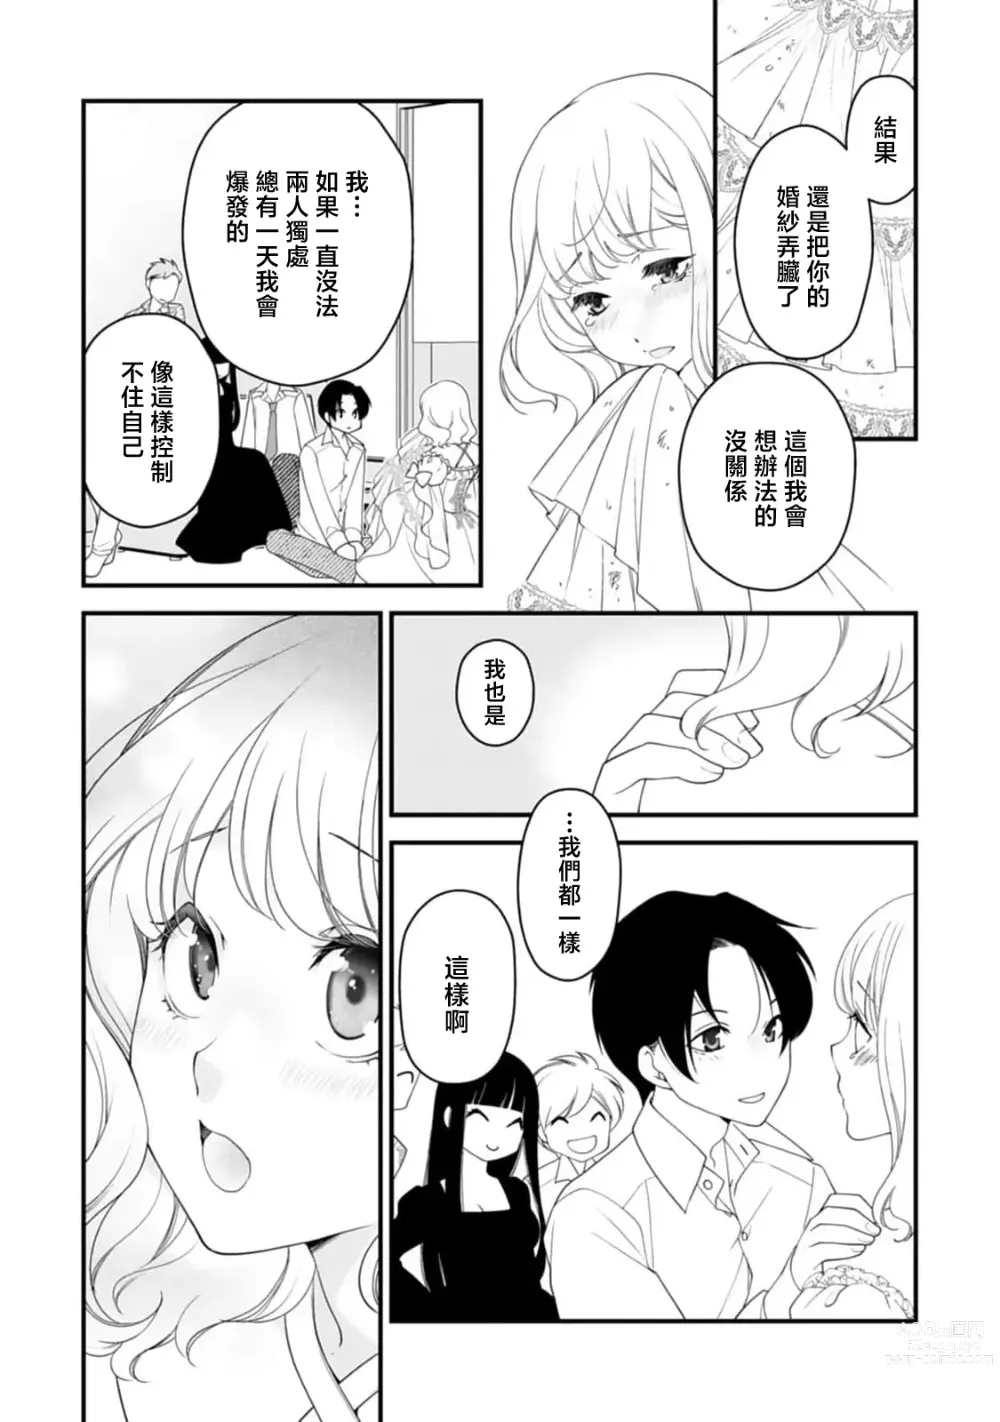 Page 22 of manga 被众人围观的豹变结婚典礼，新娘想夺回最爱的丈夫